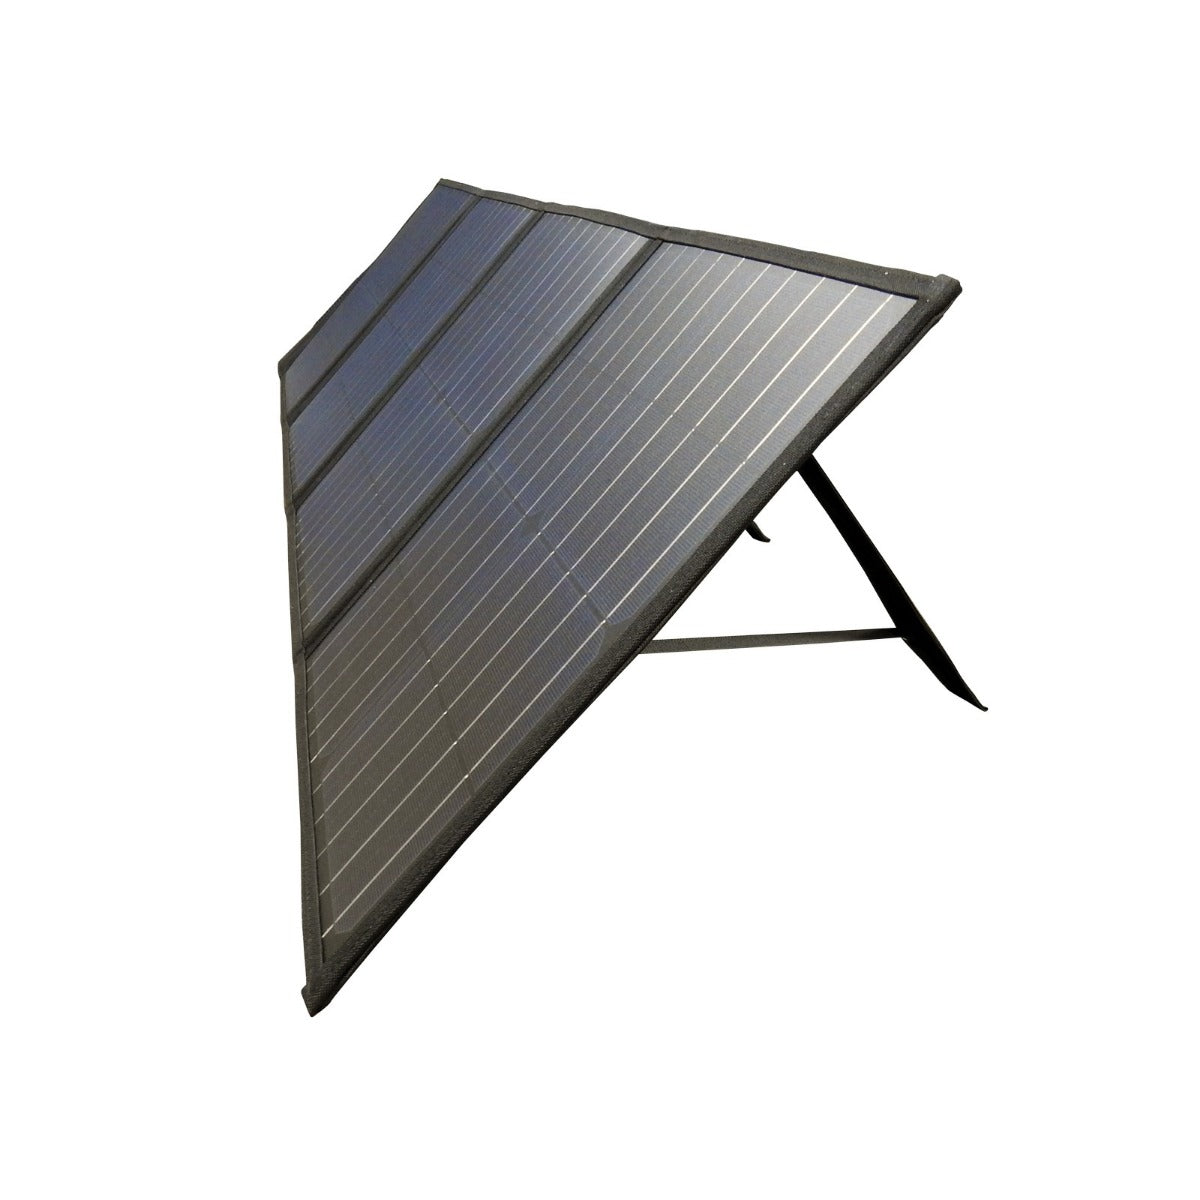 MaxRay 120W 12V Folding Solar Panel Blanket Solar Mat Kit